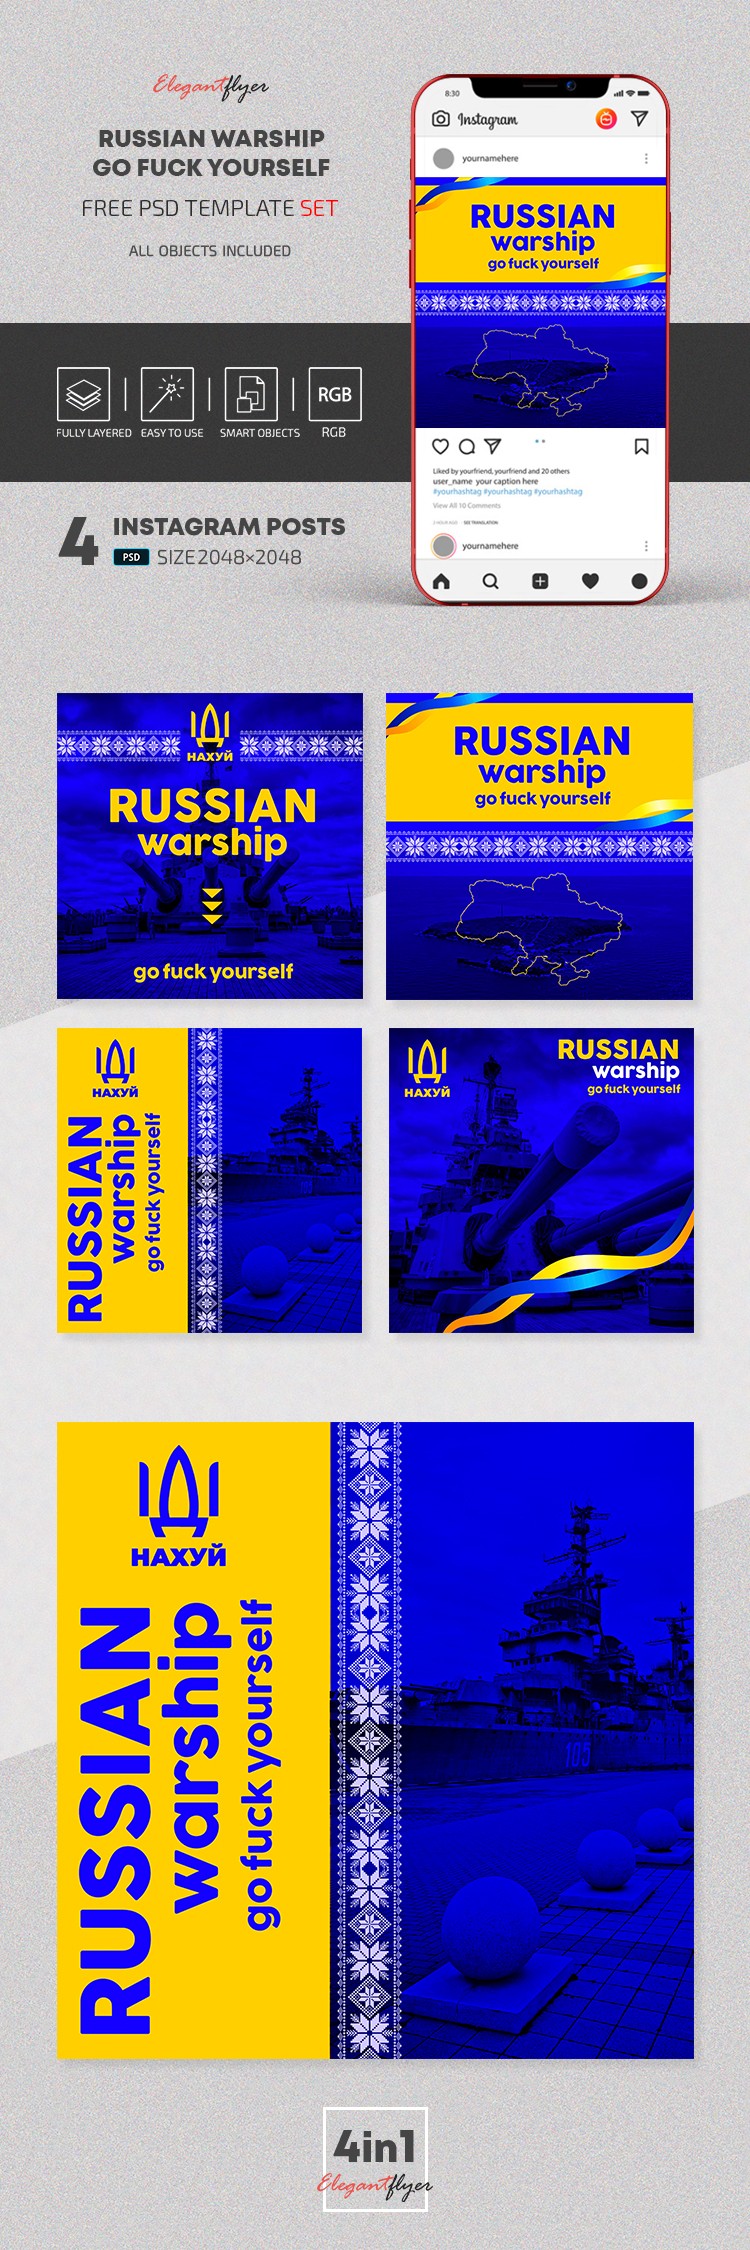 Russisches Kriegsschiff, geh' dir selbst an die Wäsche, Instagram. by ElegantFlyer